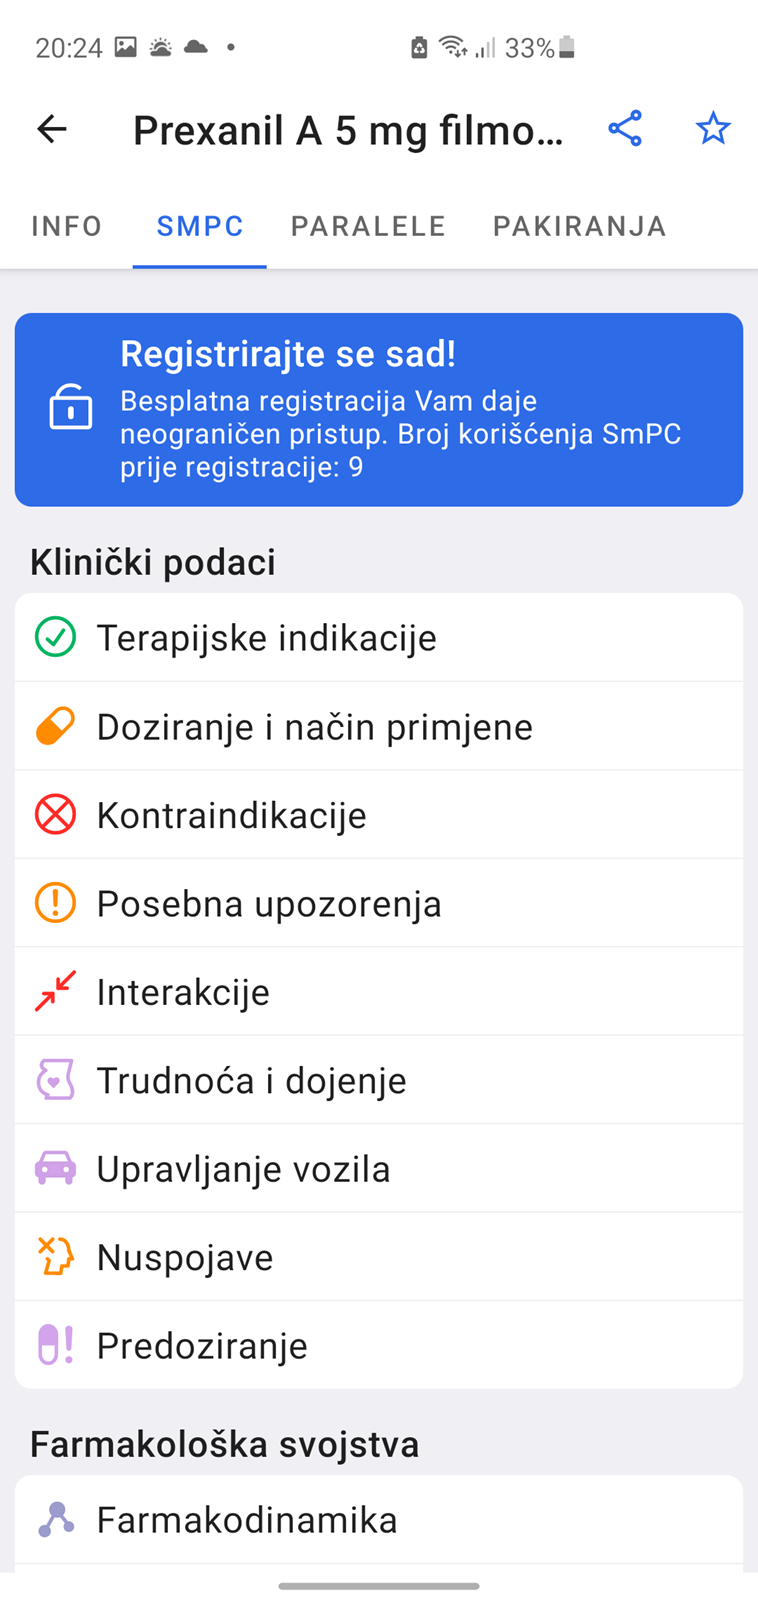 Mediately - baza podataka o lijekovima dostupnih u Hrvatskoj - APP DANA @  Bug.hr